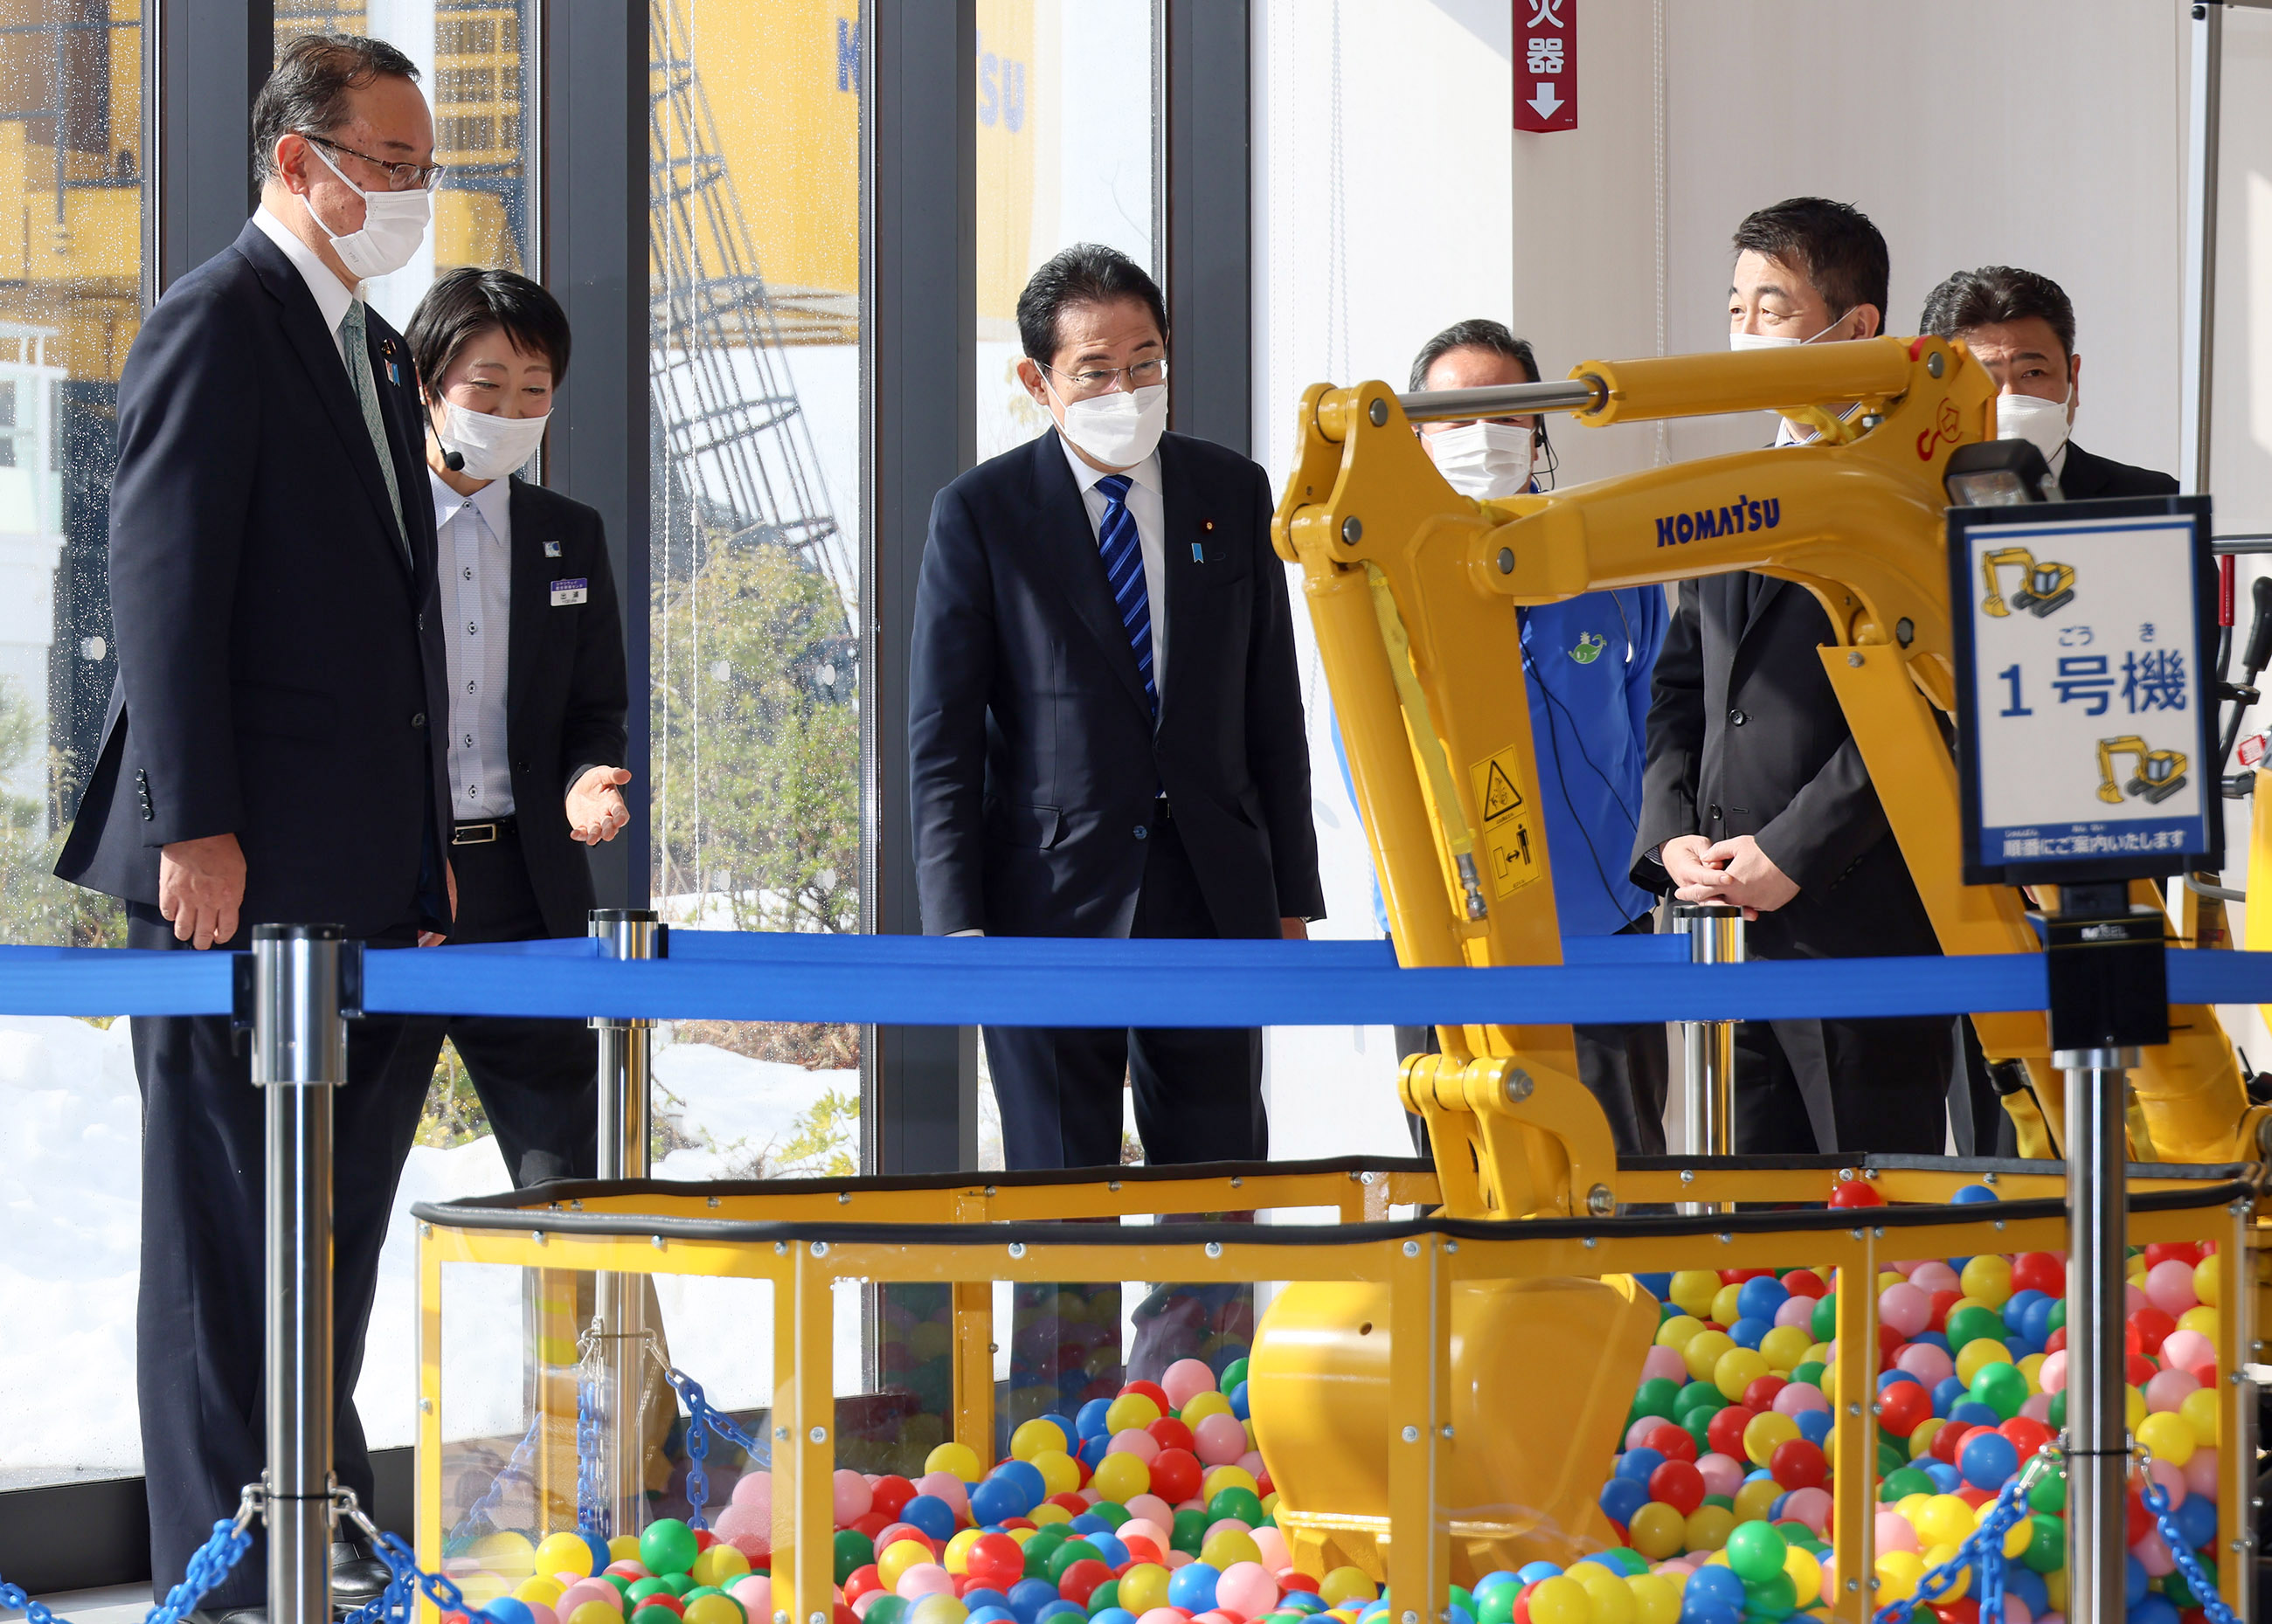 こまつの杜「わくわくコマツ未来館」を視察する岸田総理